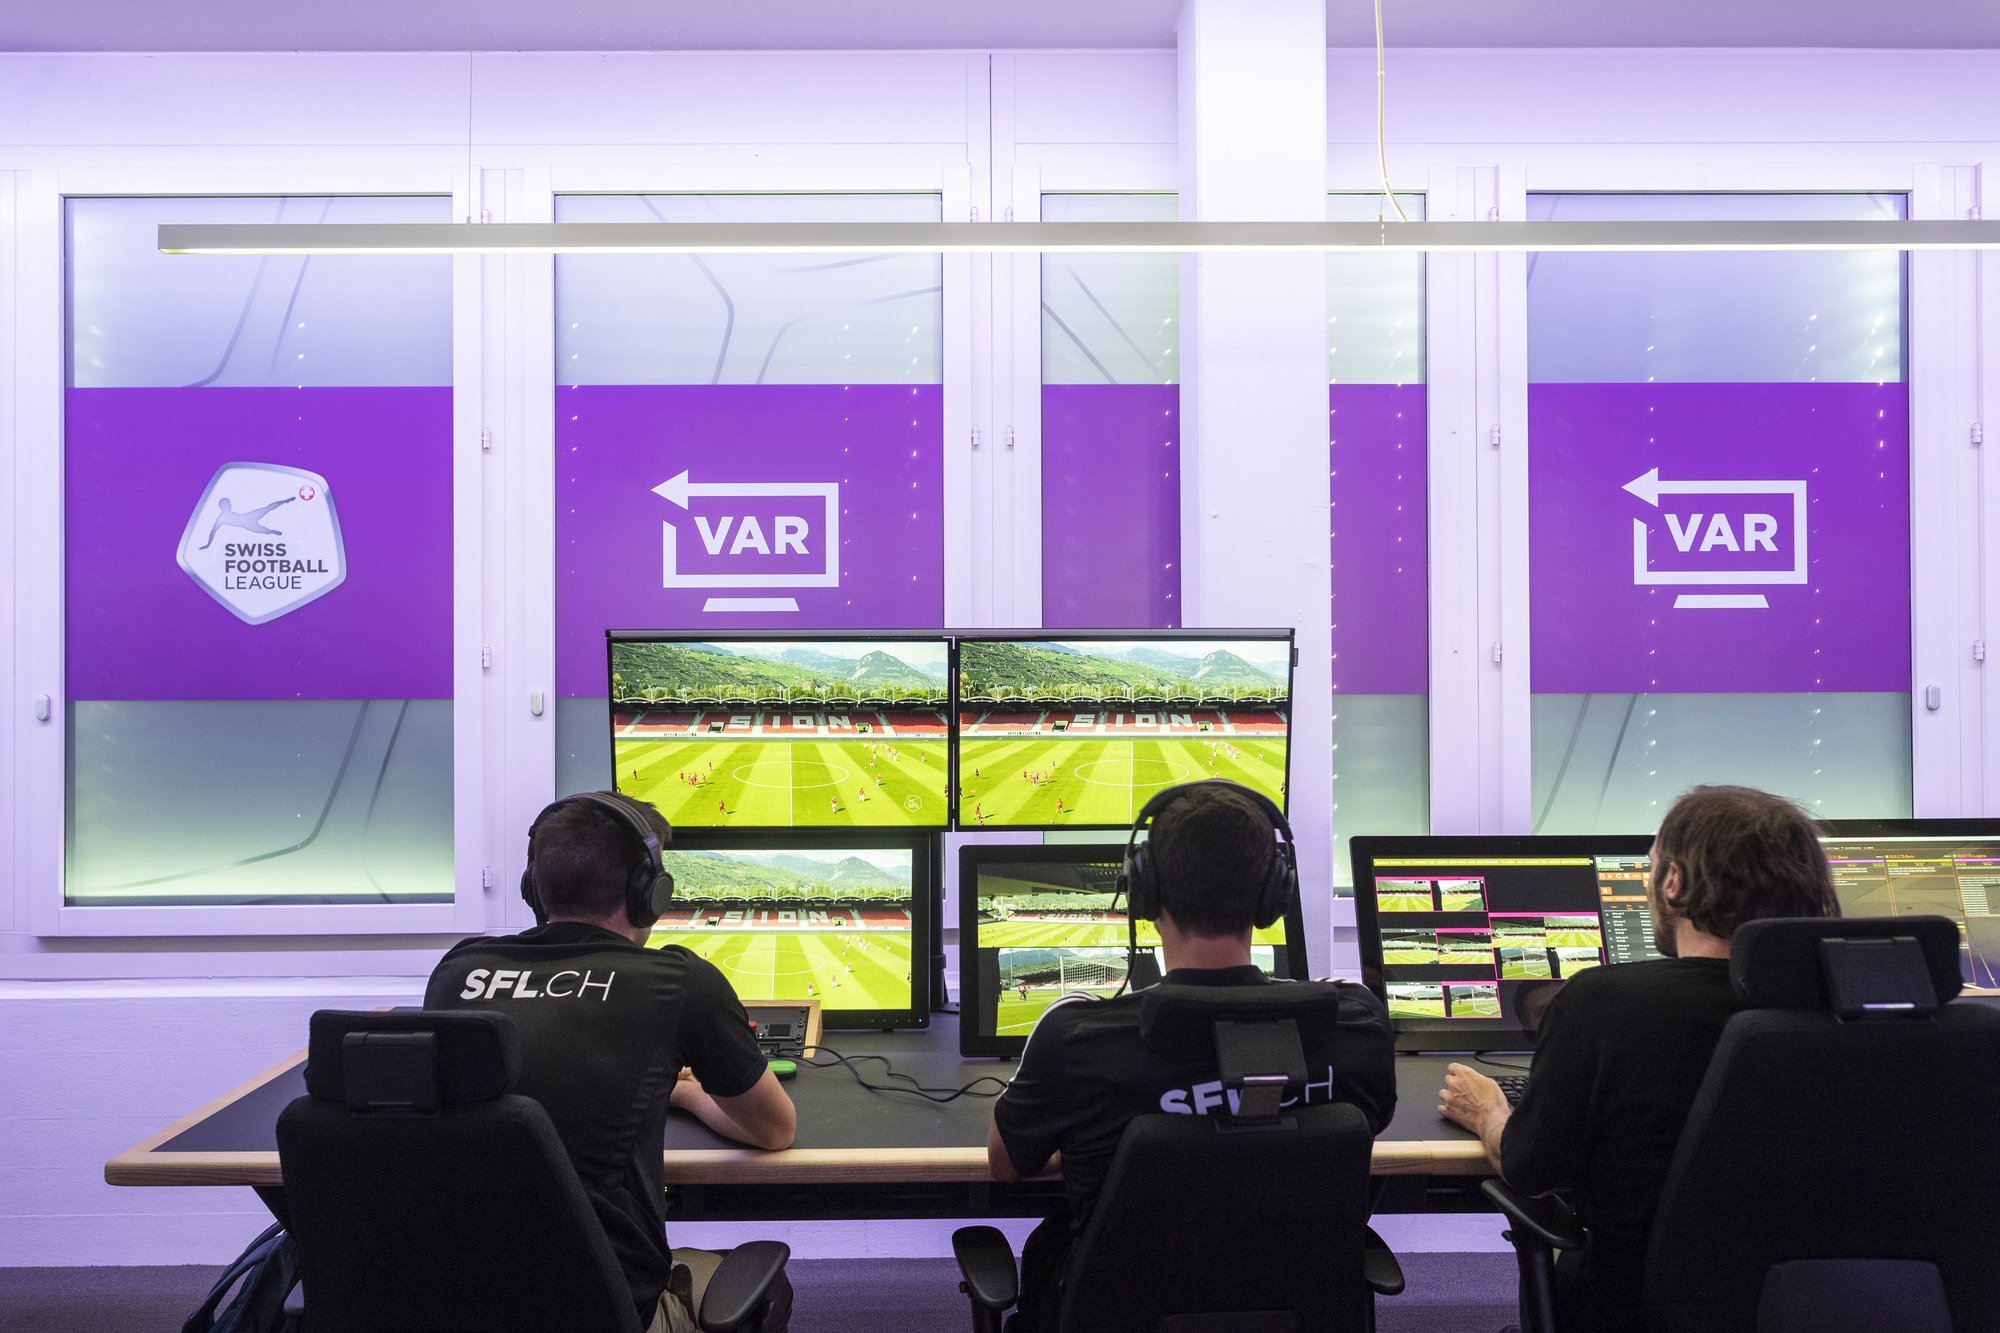 Les matchs seront scrutés en direct par un VAR (arbitre d'assistance vidéo), son assistant et un technicien.